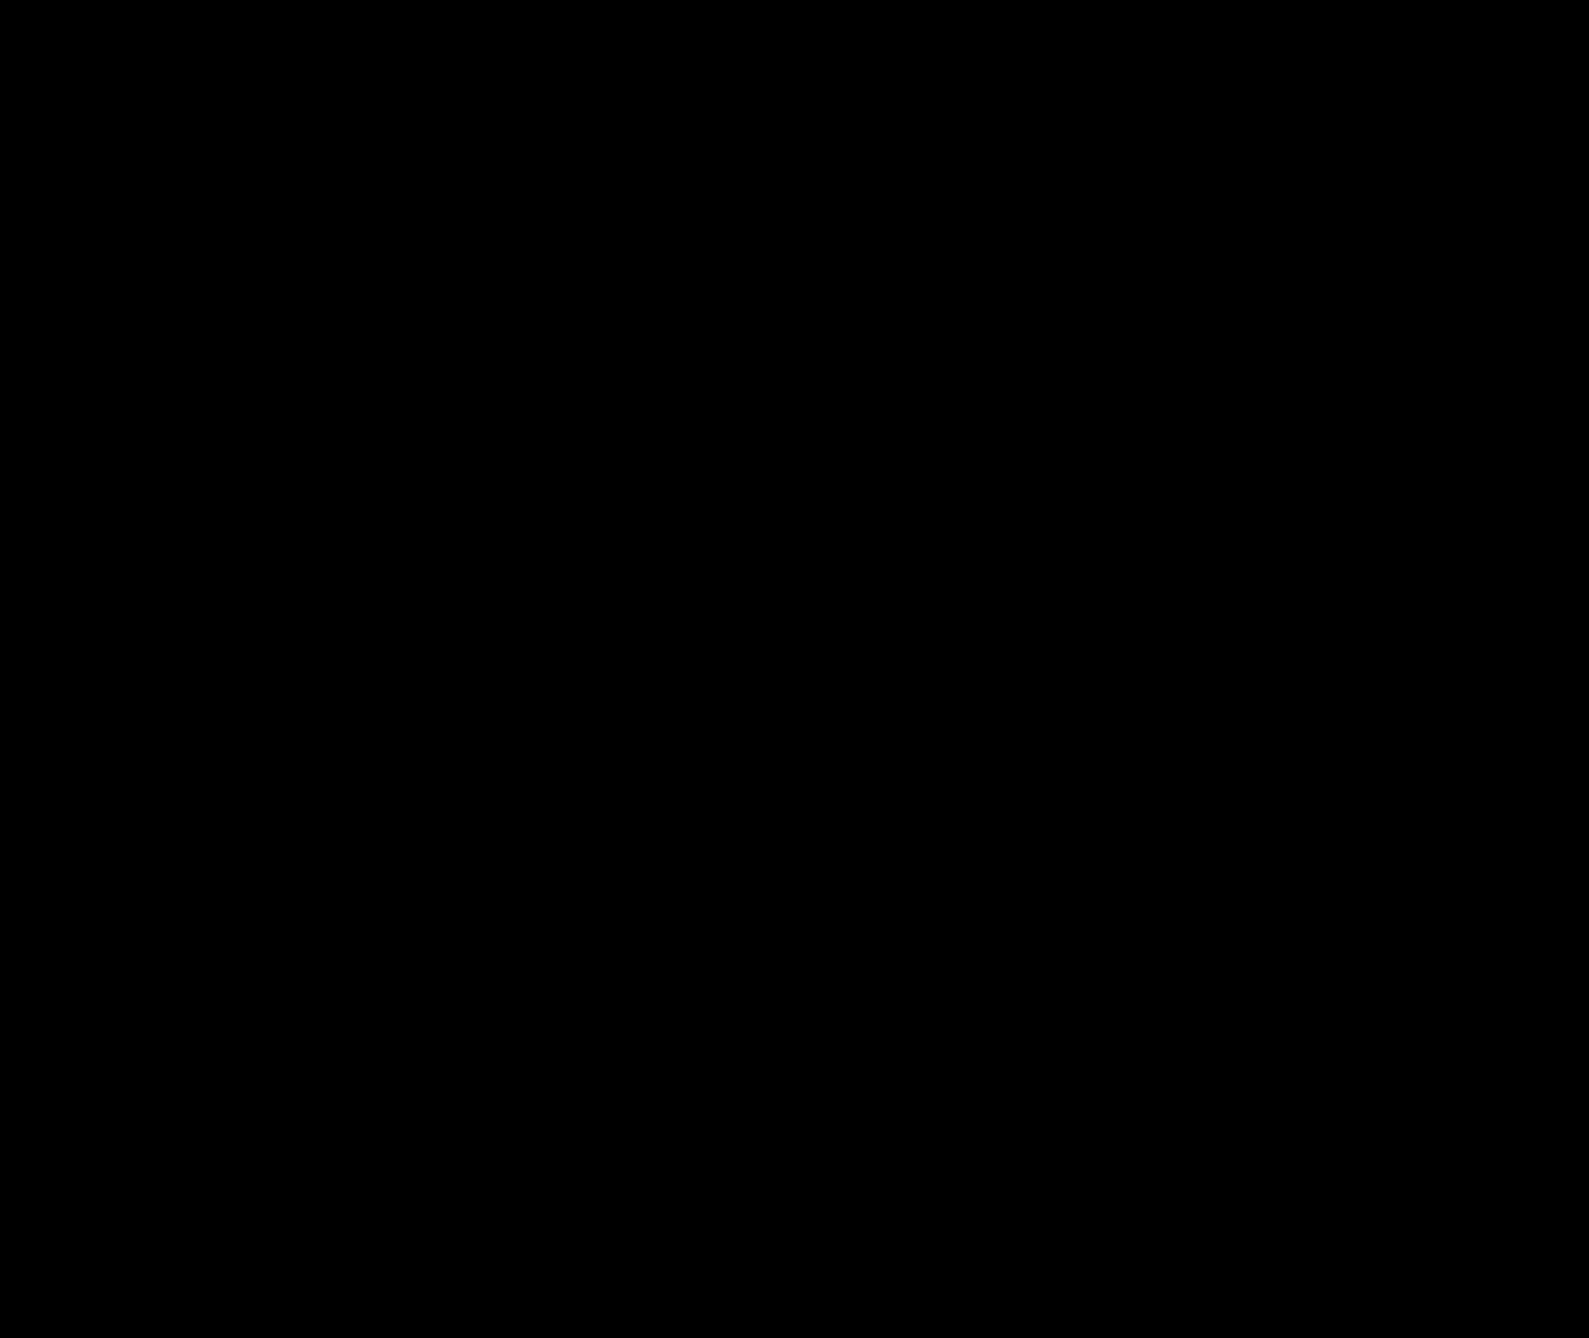 Gmail Logo Image PNG